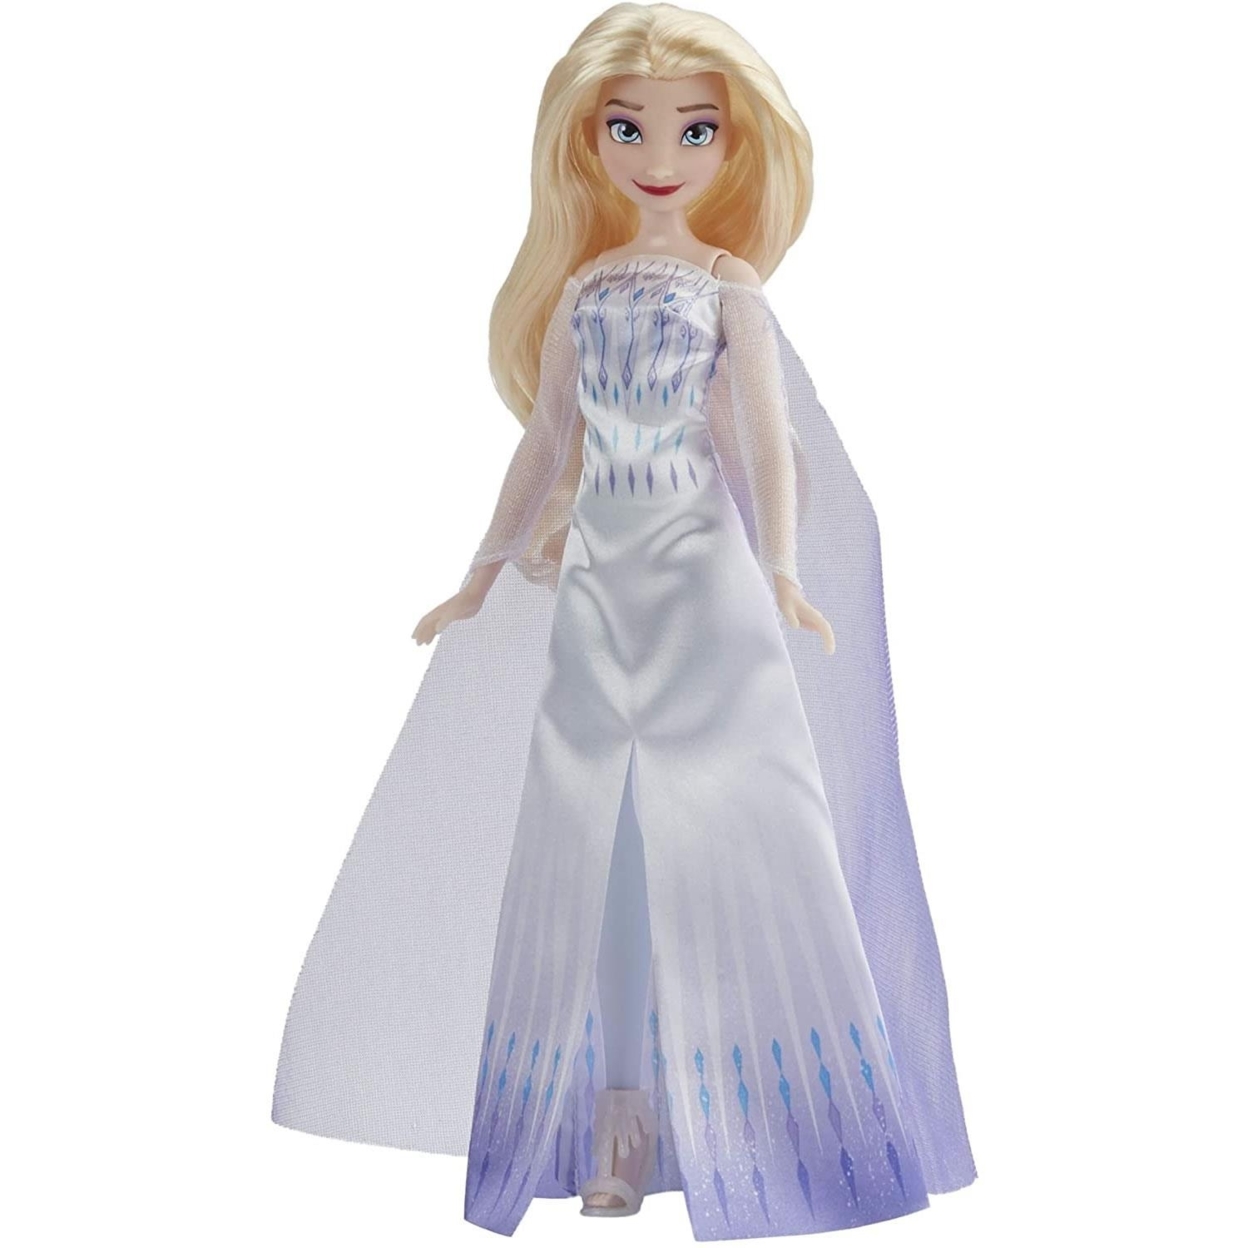 Disney Frozen 2 Queen Elsa Fashion Doll Blonde Blue Gown Cape Posable Hasbro